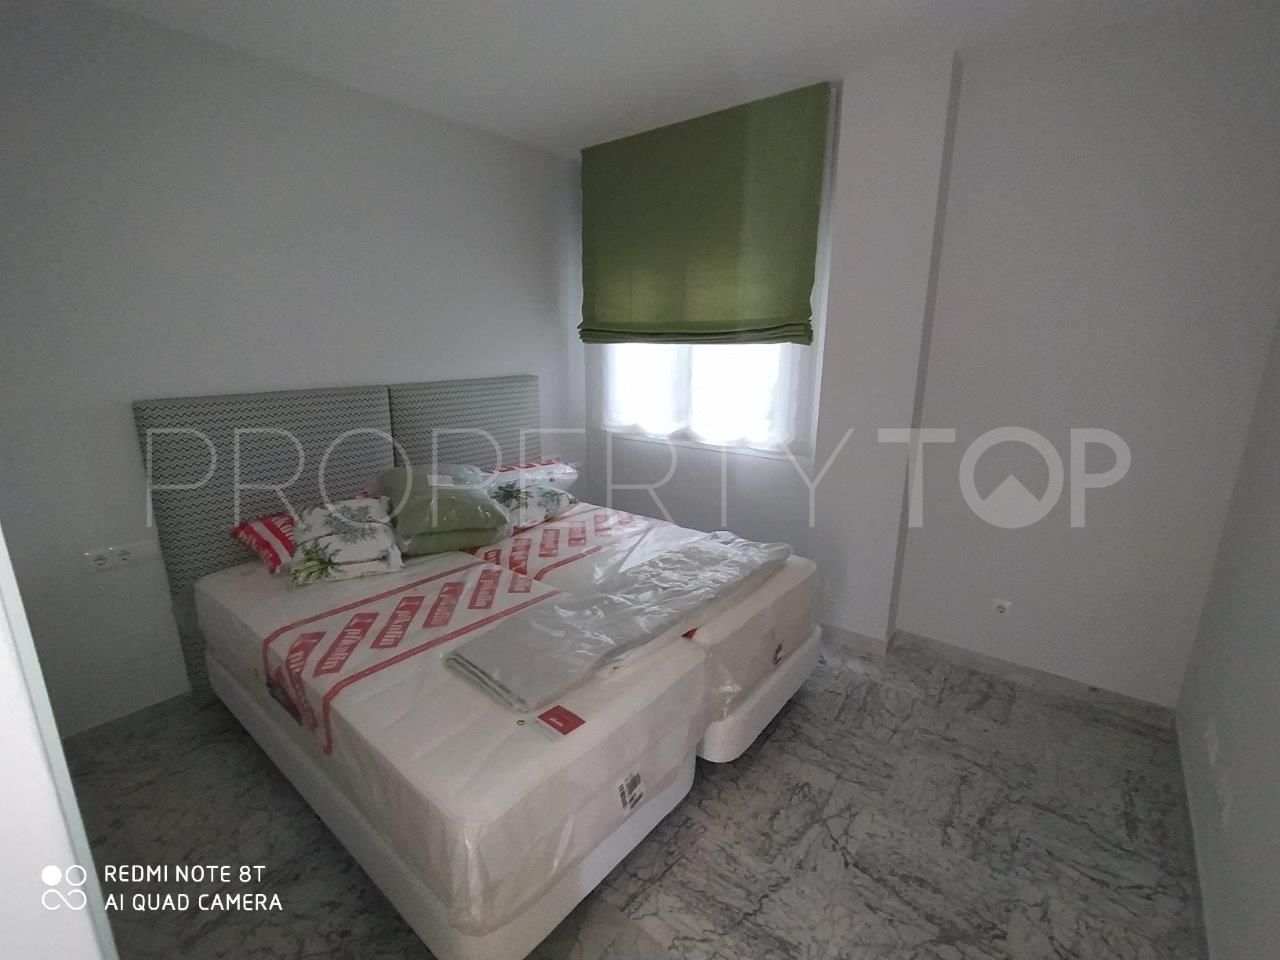 Apartamento en venta en Marbella - Puerto Banus con 2 dormitorios